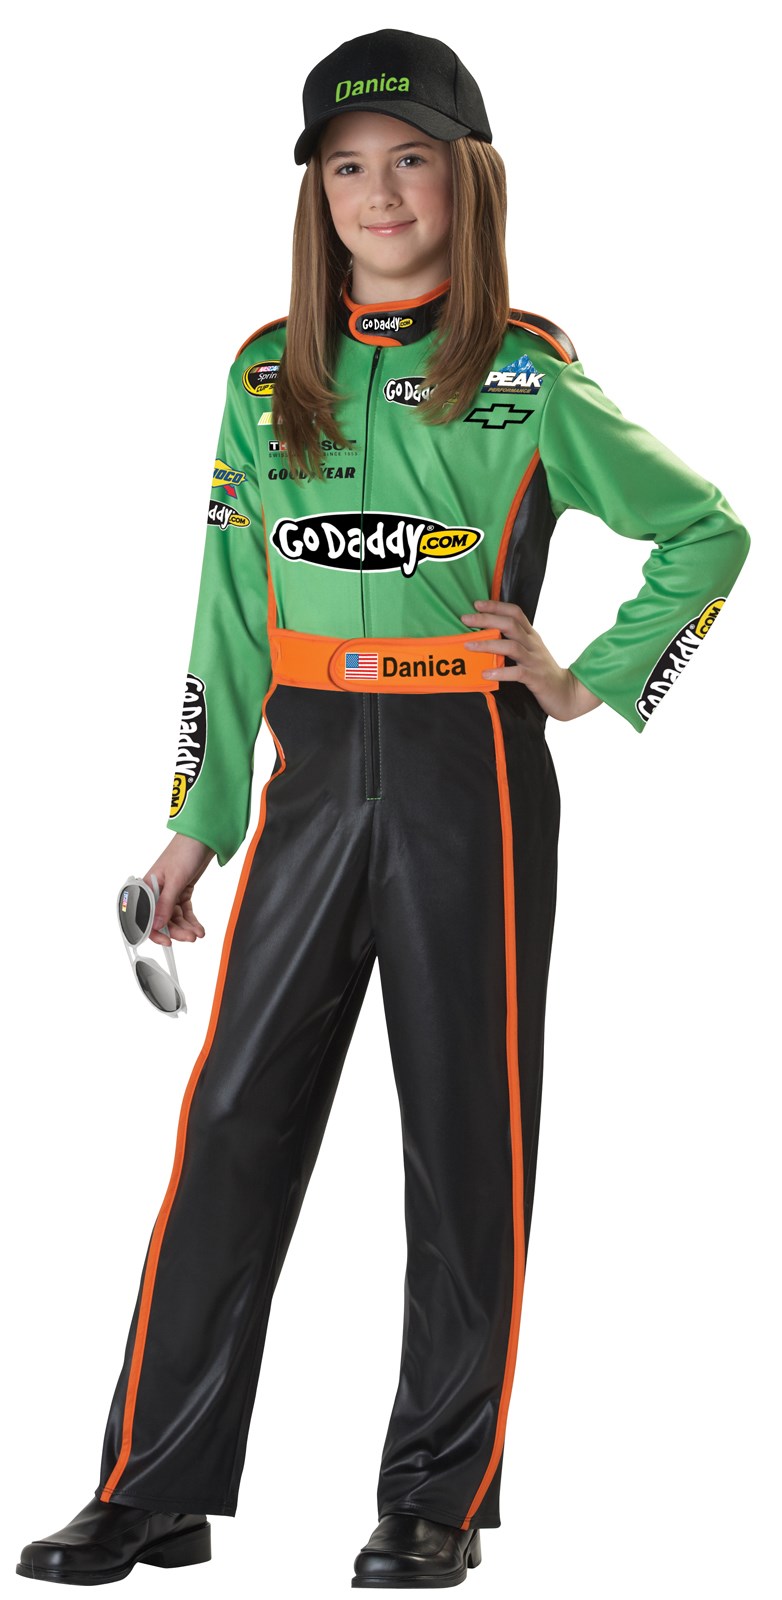 NASCAR Danica Patrick Child Costume